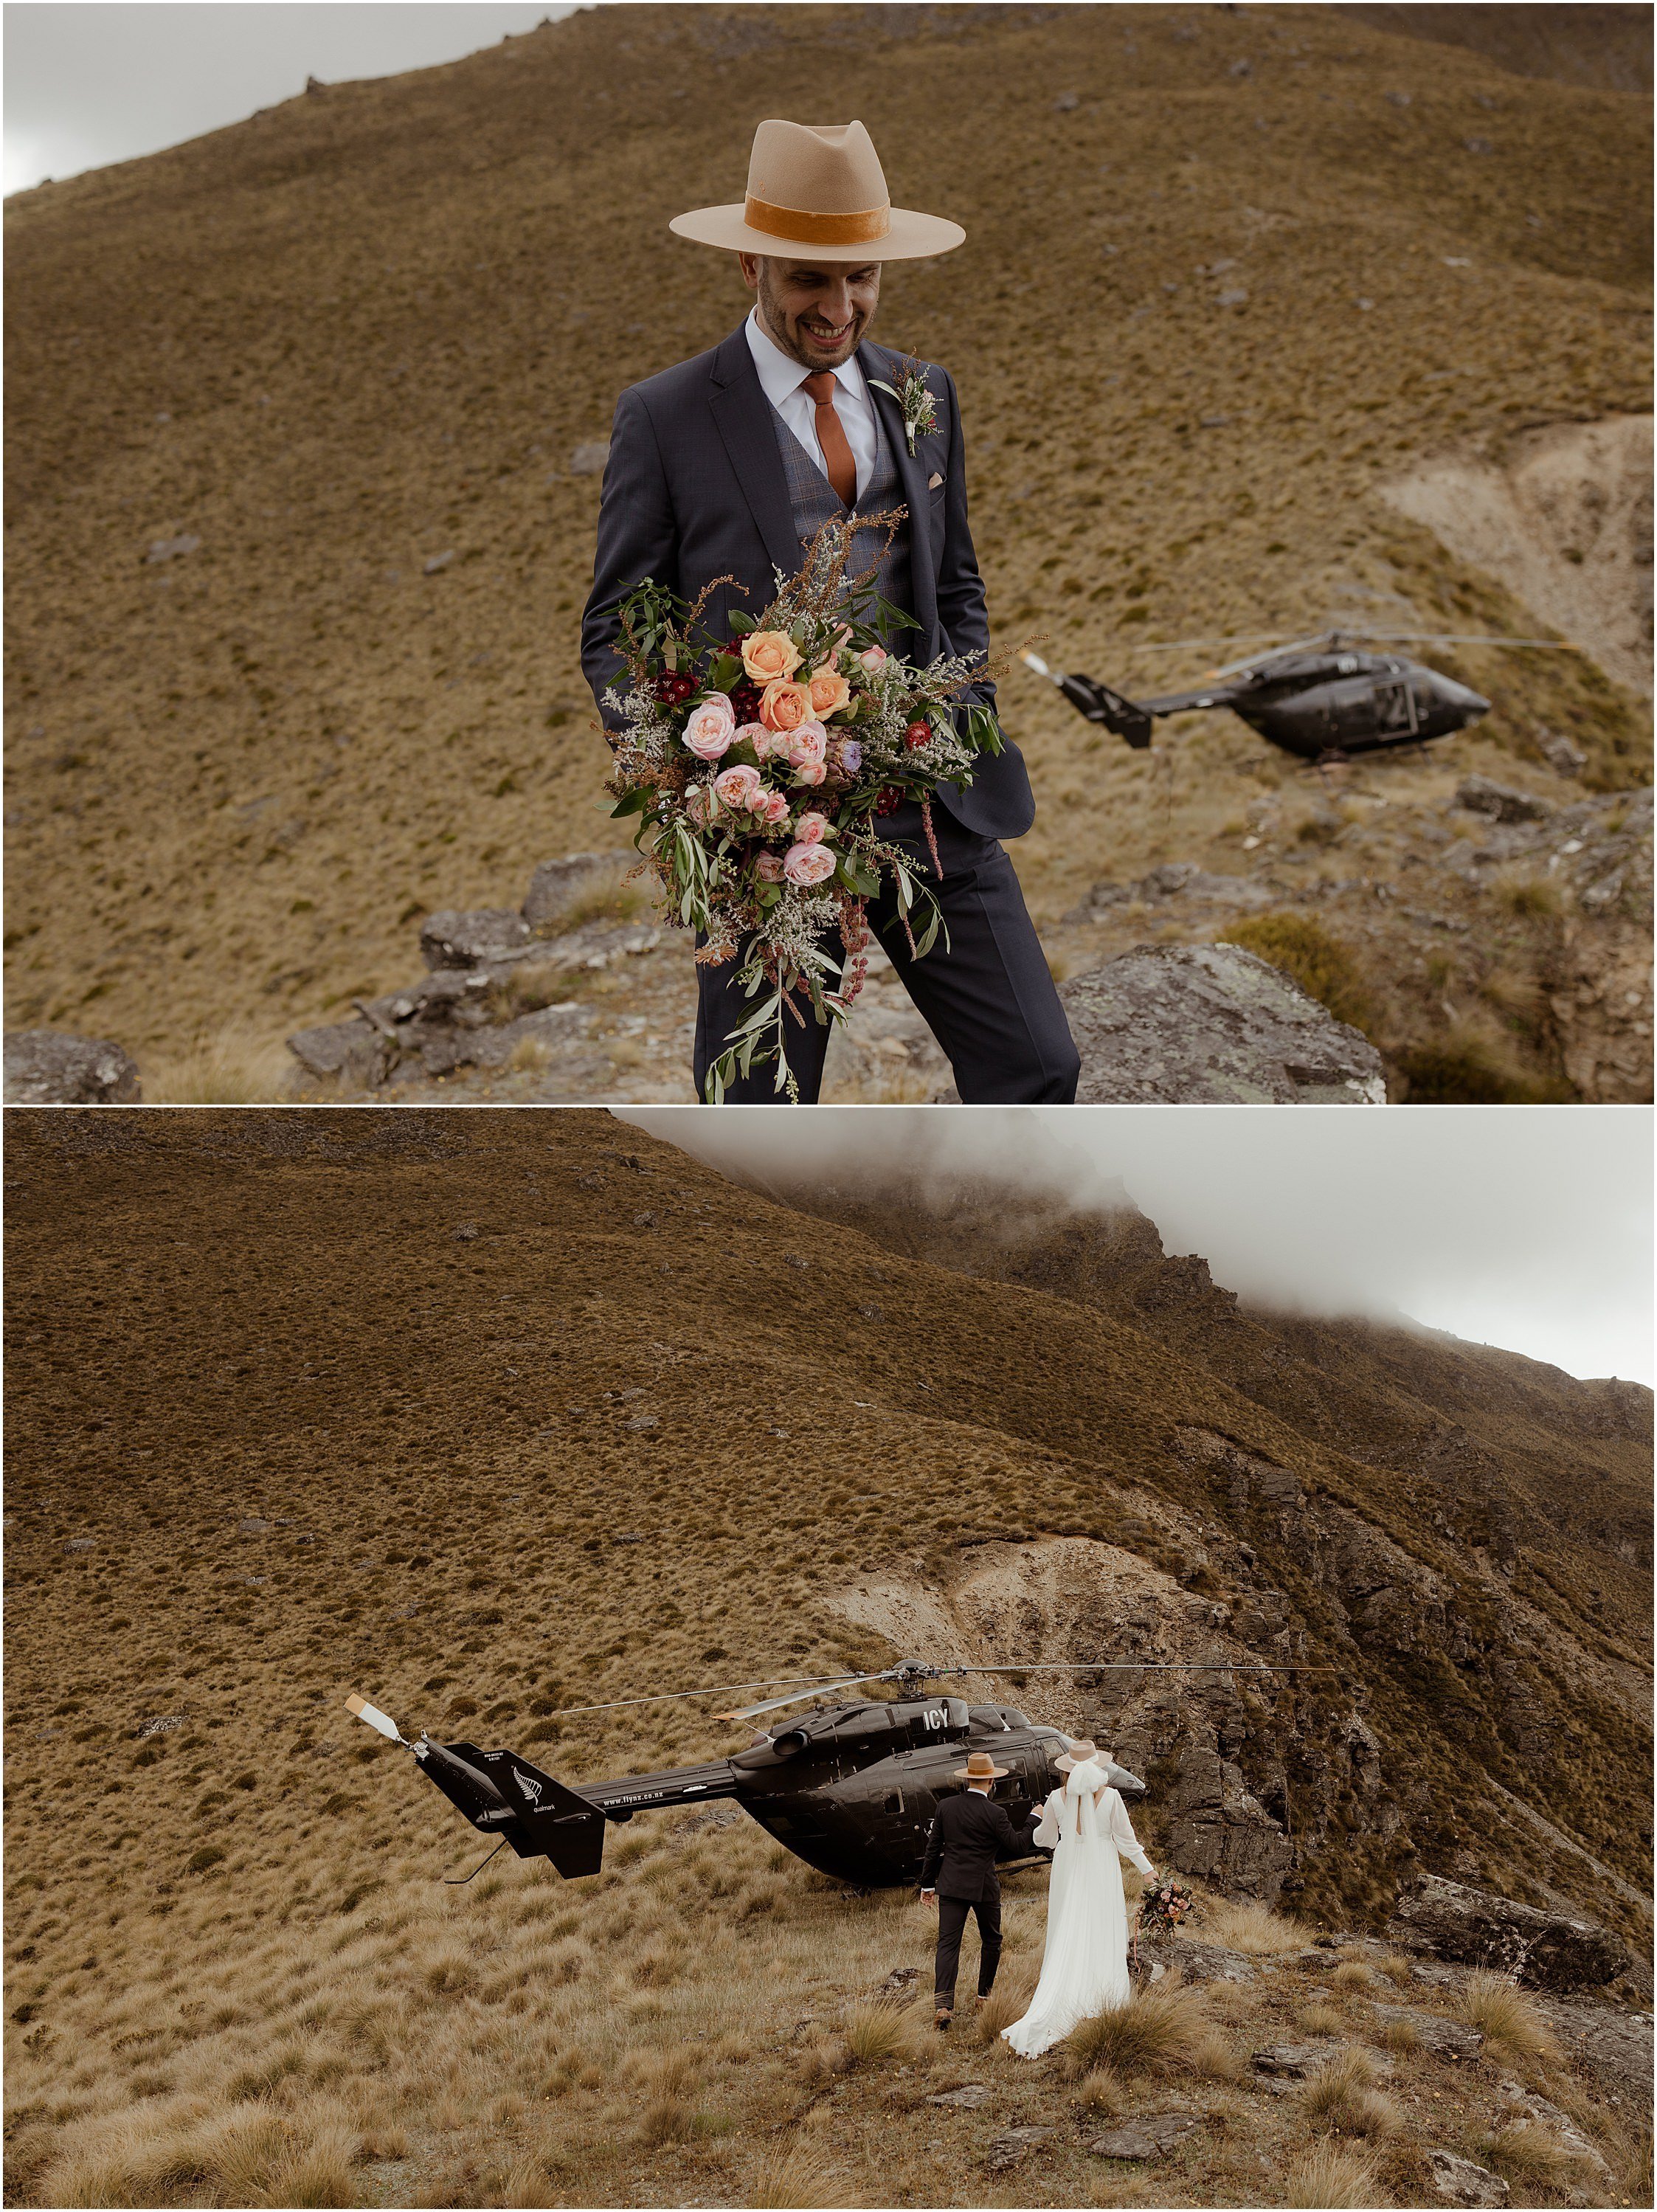 Zanda+Auckland+wedding+photographer+New+ZealandQueenstown+helicopter+elopement_0263.jpg